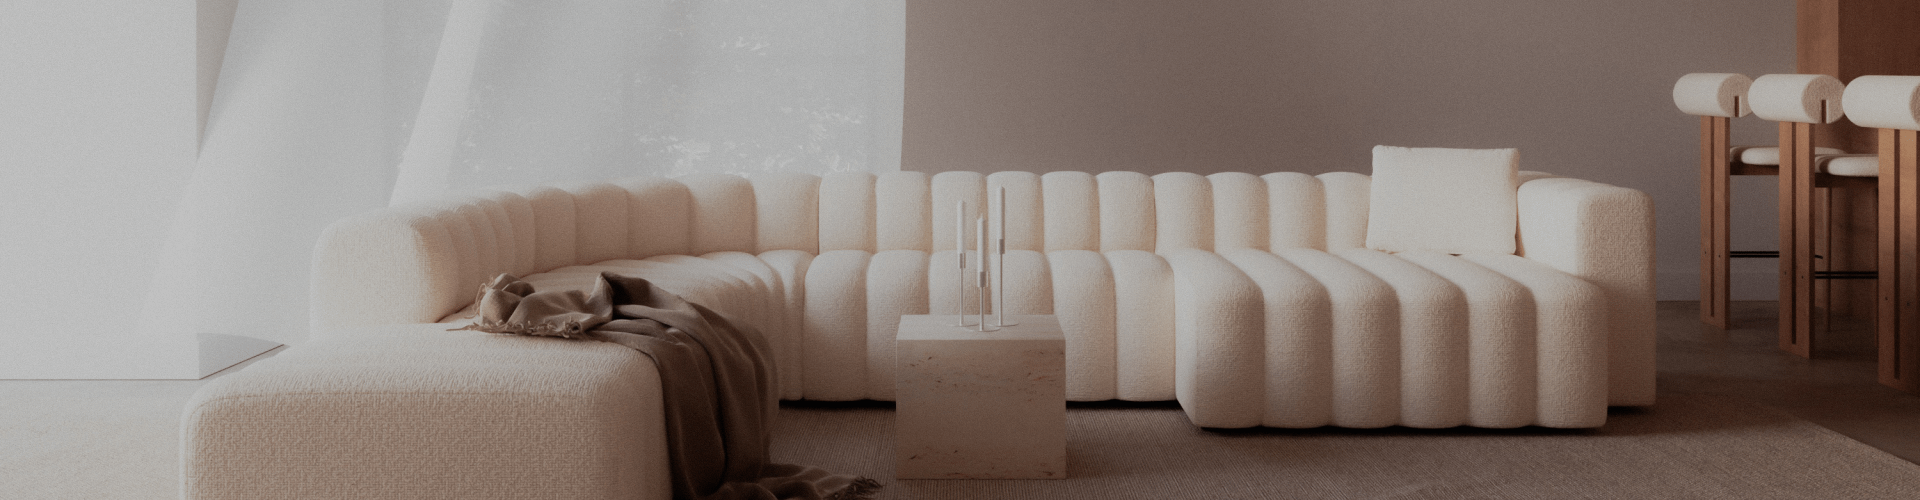 Un sofá blanco en una habitación bien iluminada con muebles de diseño alrededor.